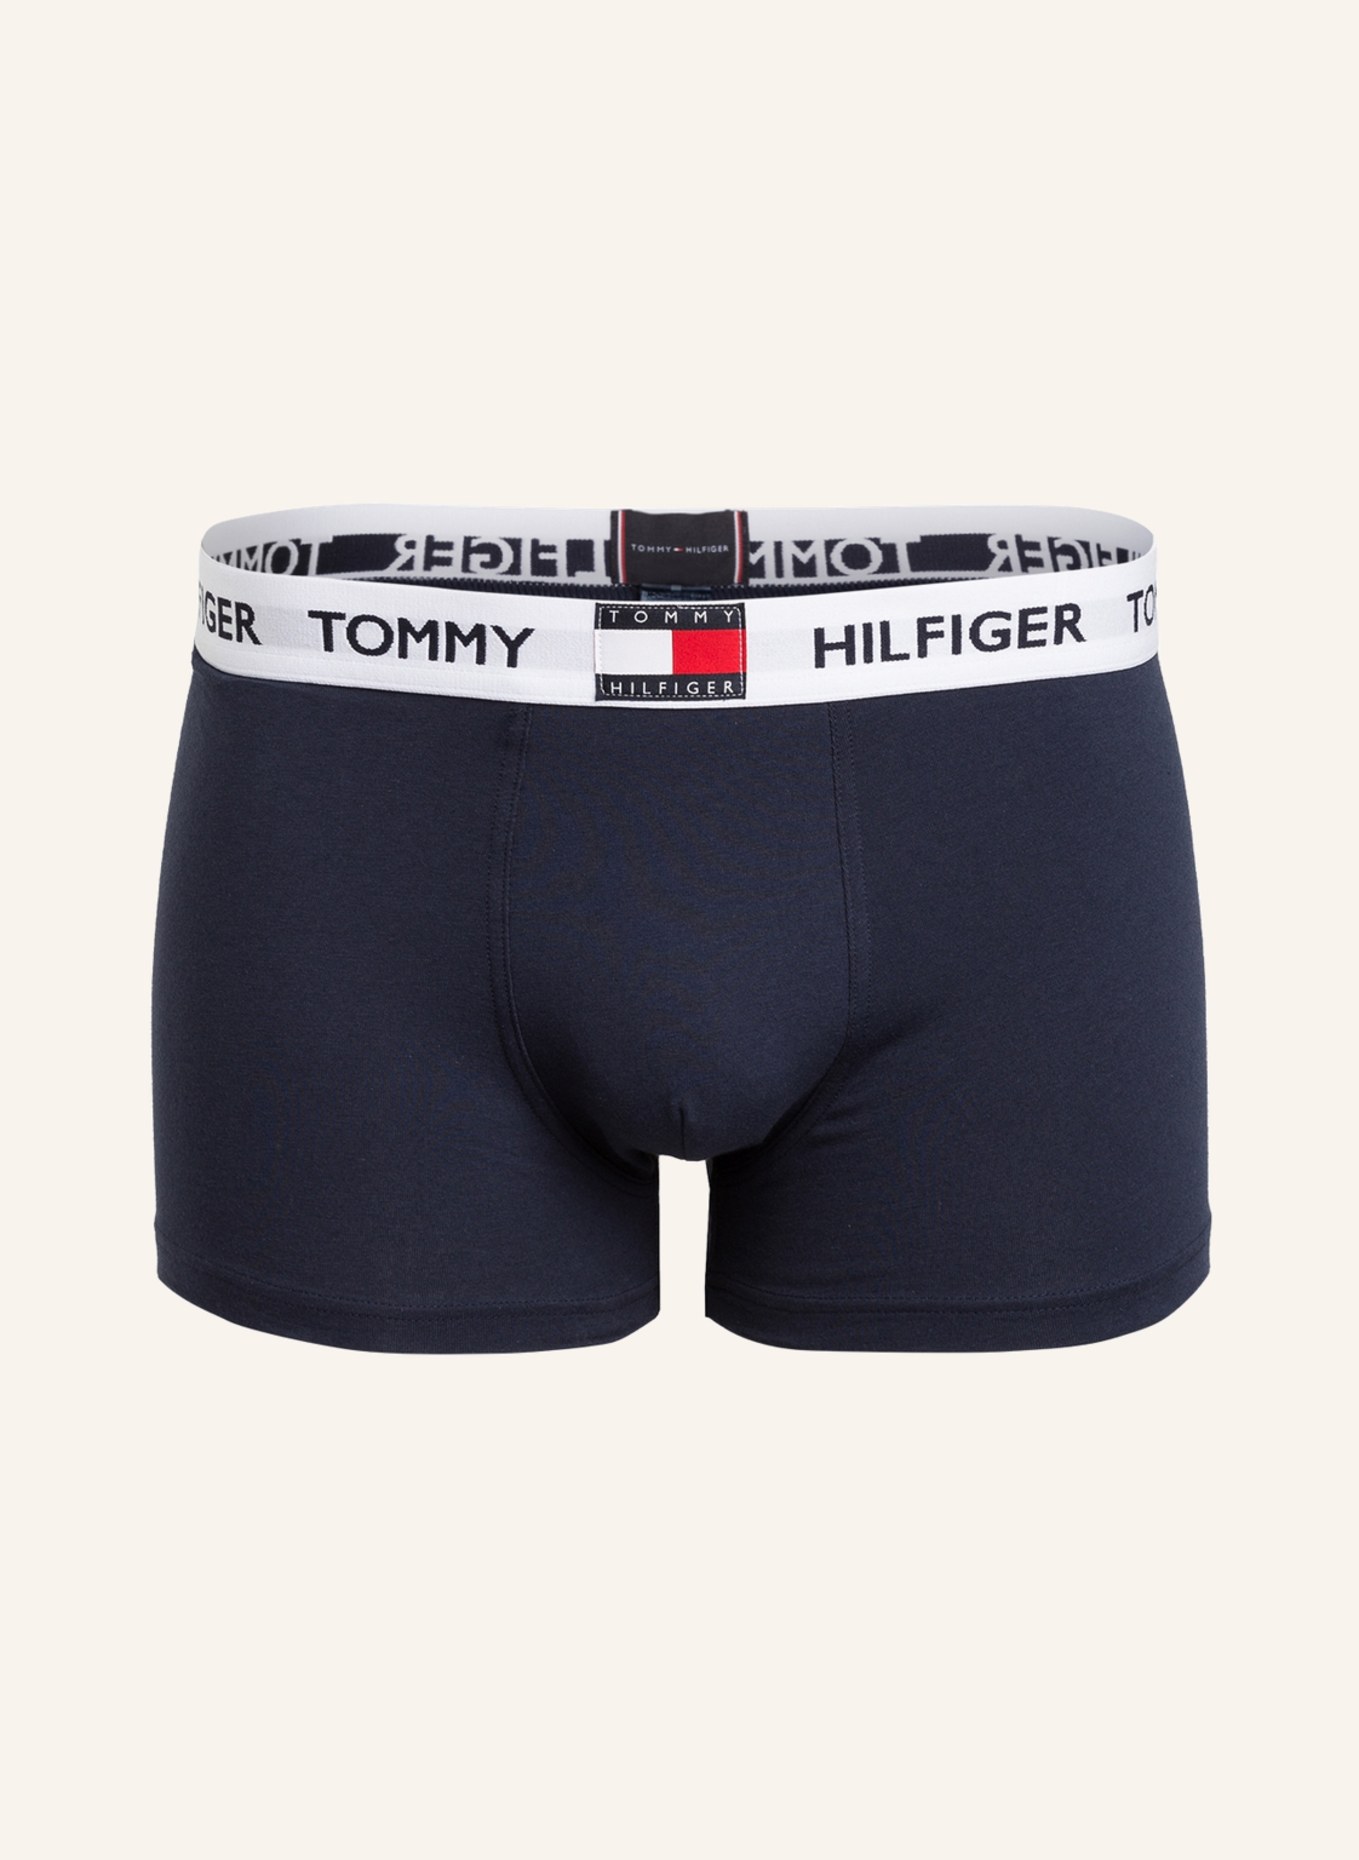 TOMMY HILFIGER Boxer shorts, Color: BLUE (Image 1)